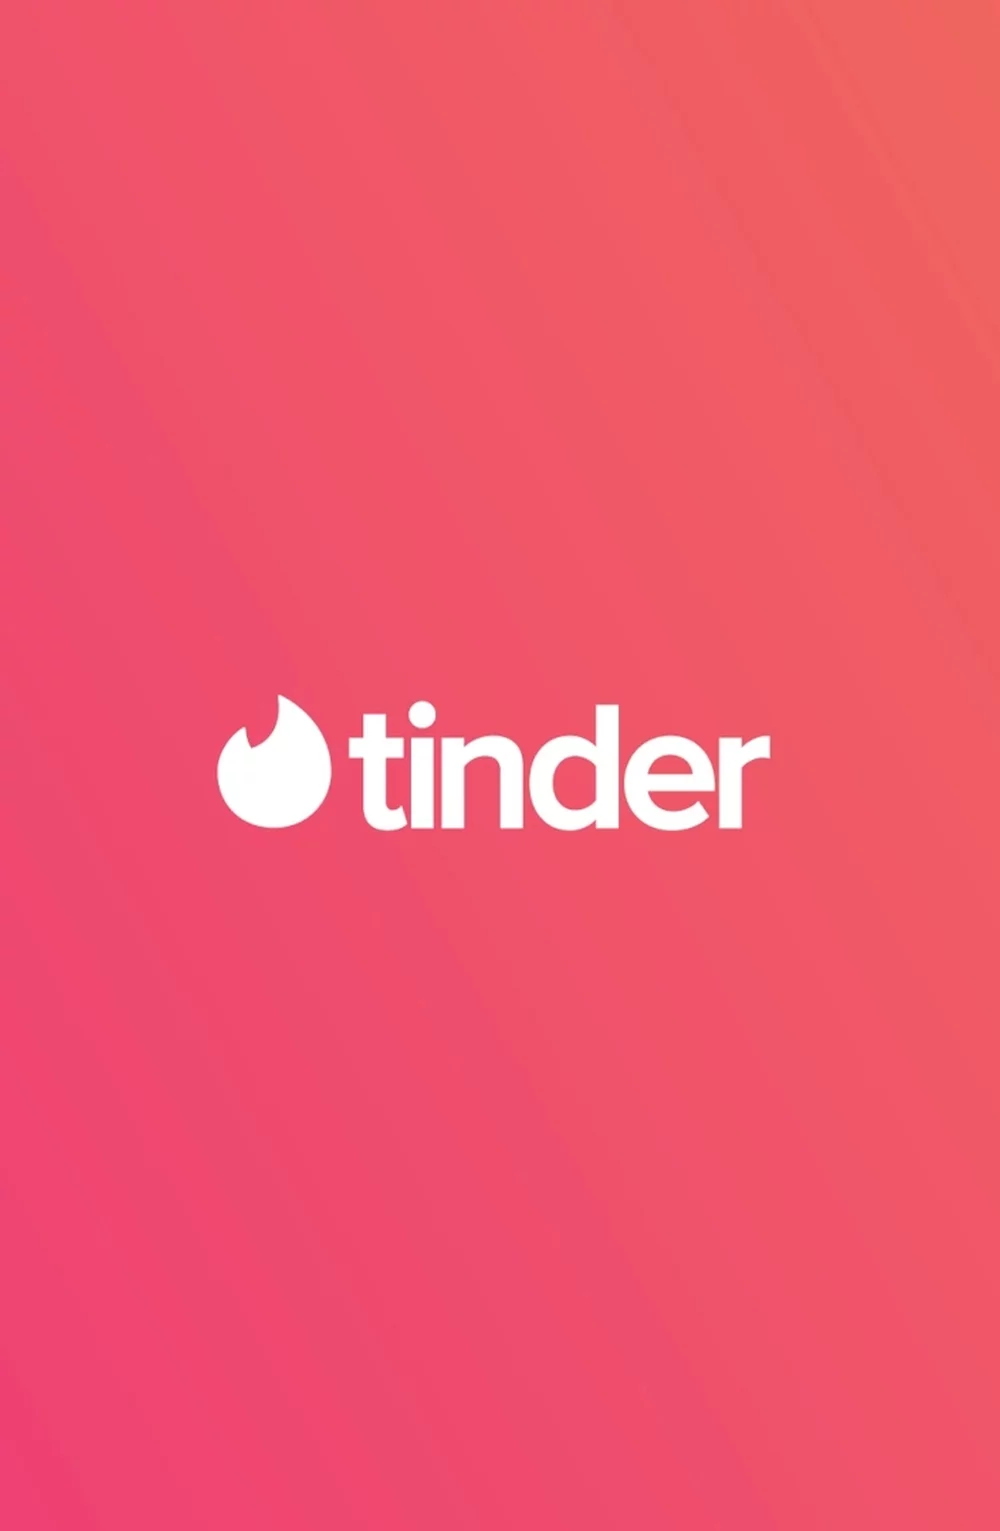 Aplikacja Tinder do randkowania.